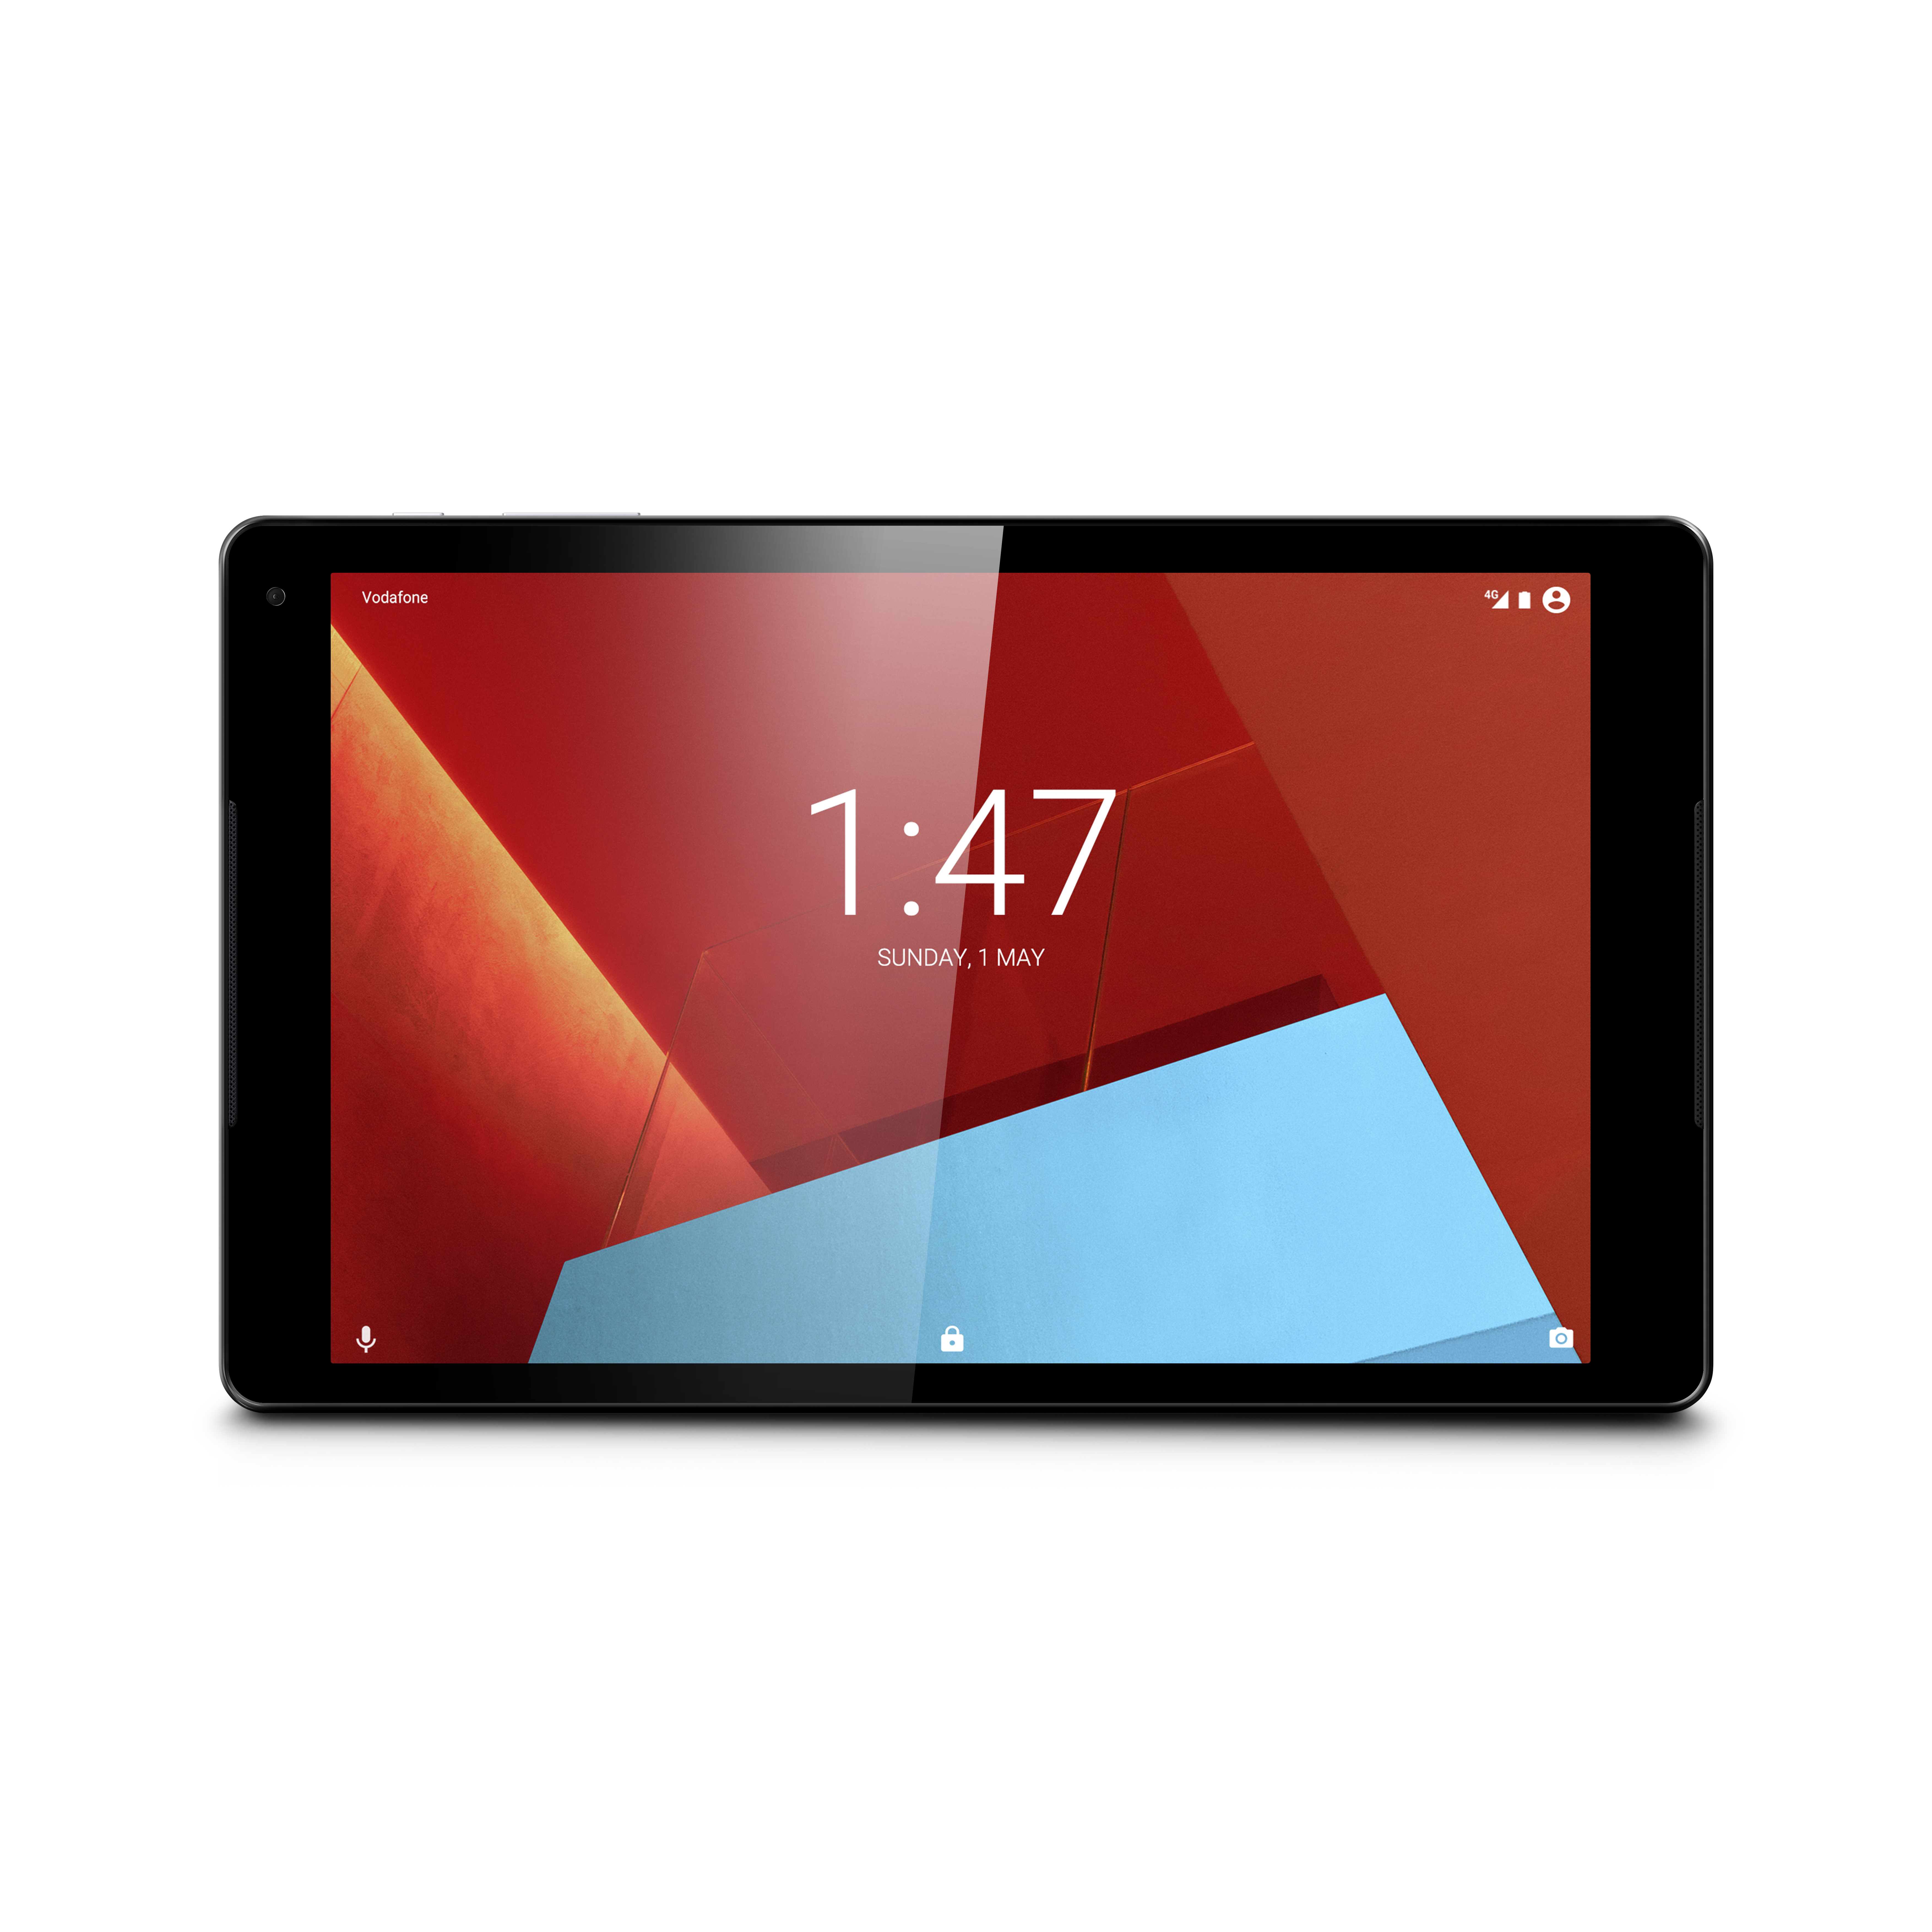 Neues Vodafone Tablet Tab prime 7 günstig erhältlich